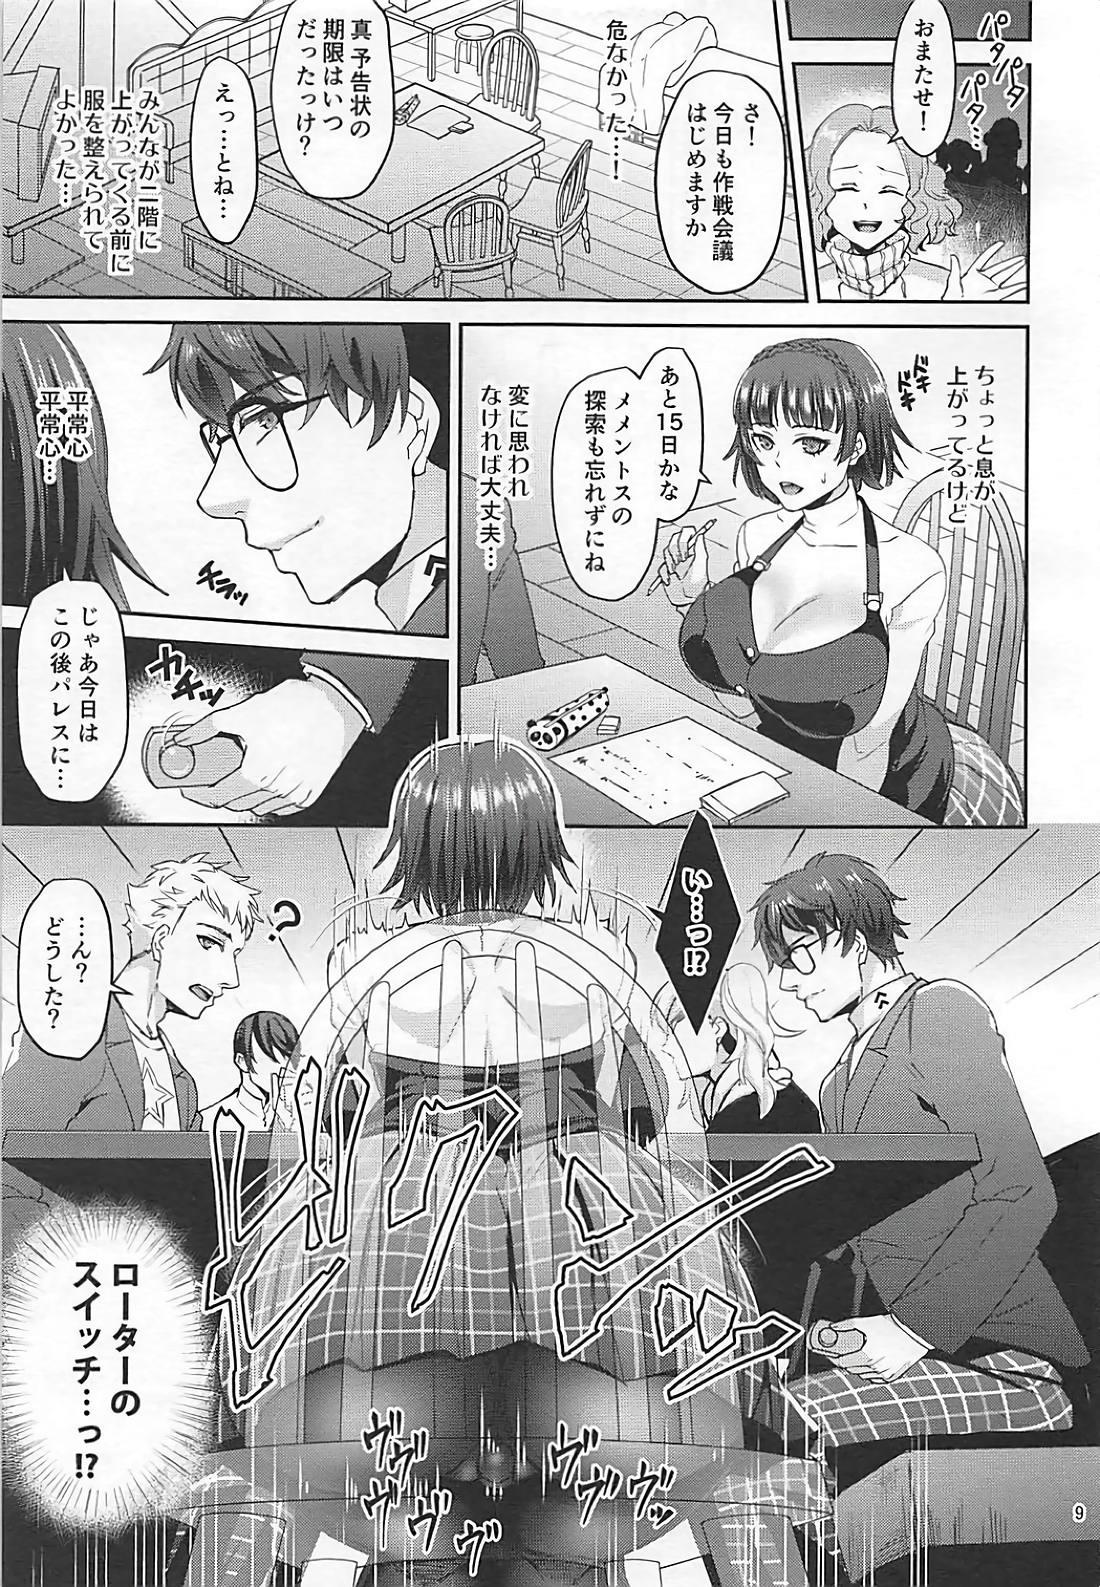 Buttplug Kimi wa Midara na Boku no Koibito 2 - Persona 5 Comendo - Page 8